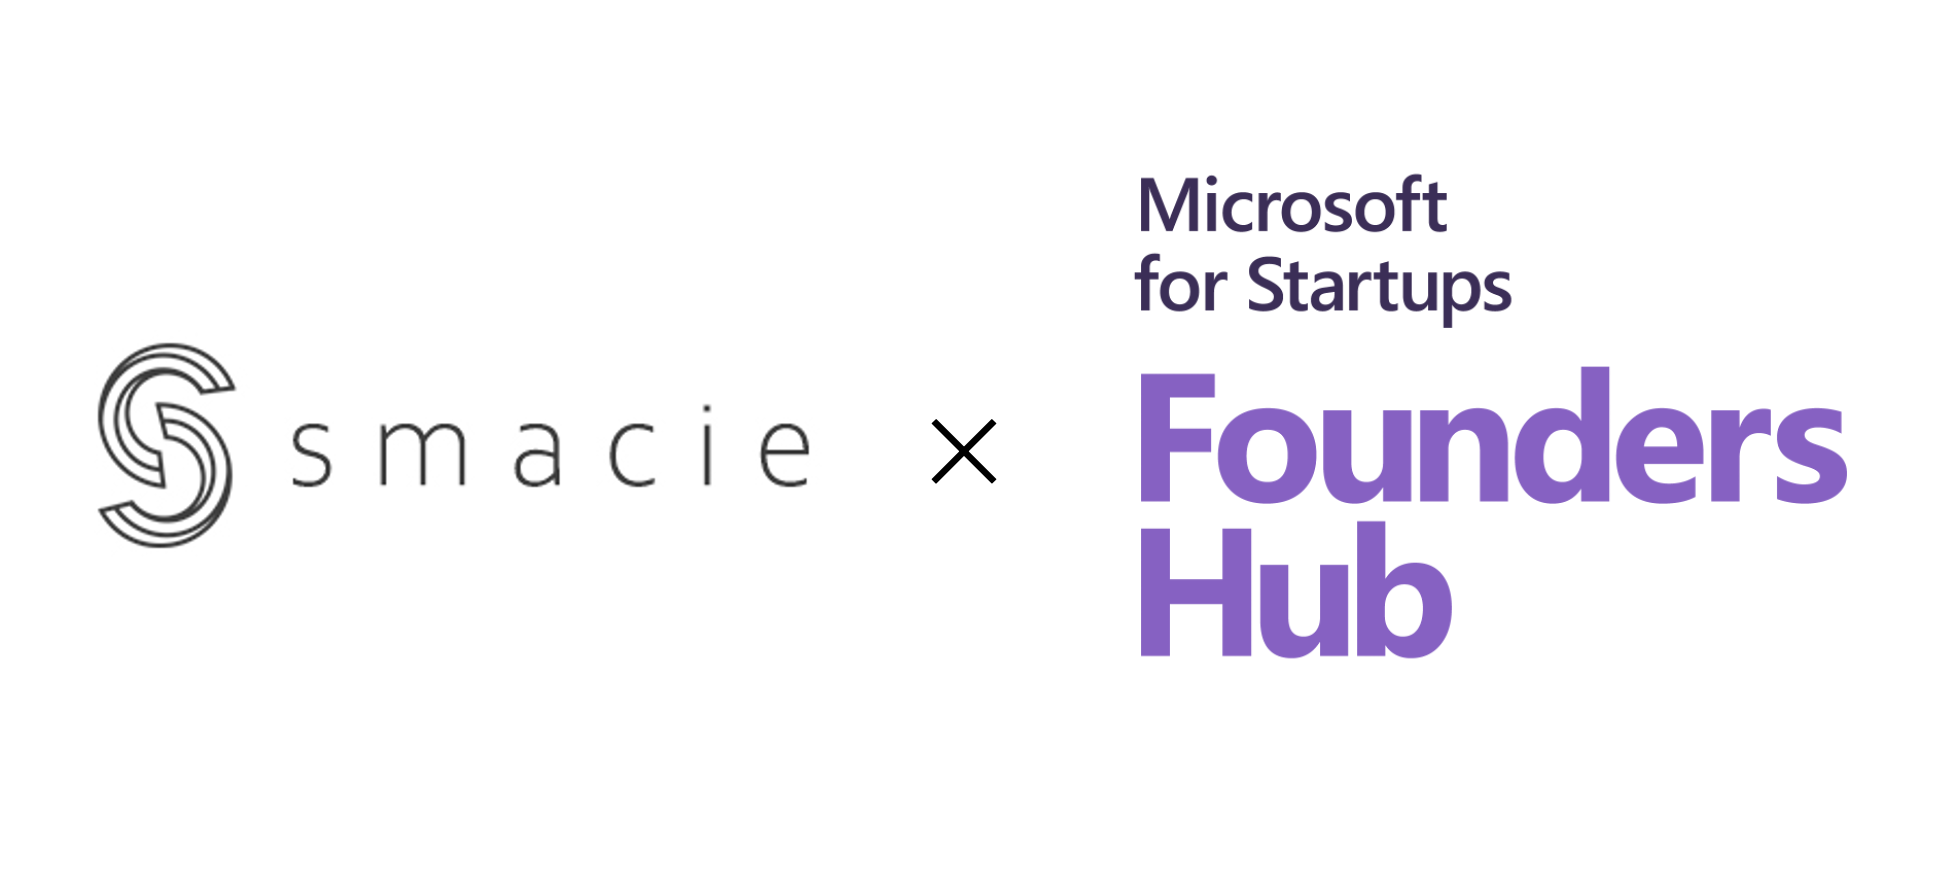 世界一のITセールスプラットフォーマーを目指すSmacie社が、マイクロソフト社のスタートアップ支援プログラム「Microsoft for Startups Founders Hub」に採択されました